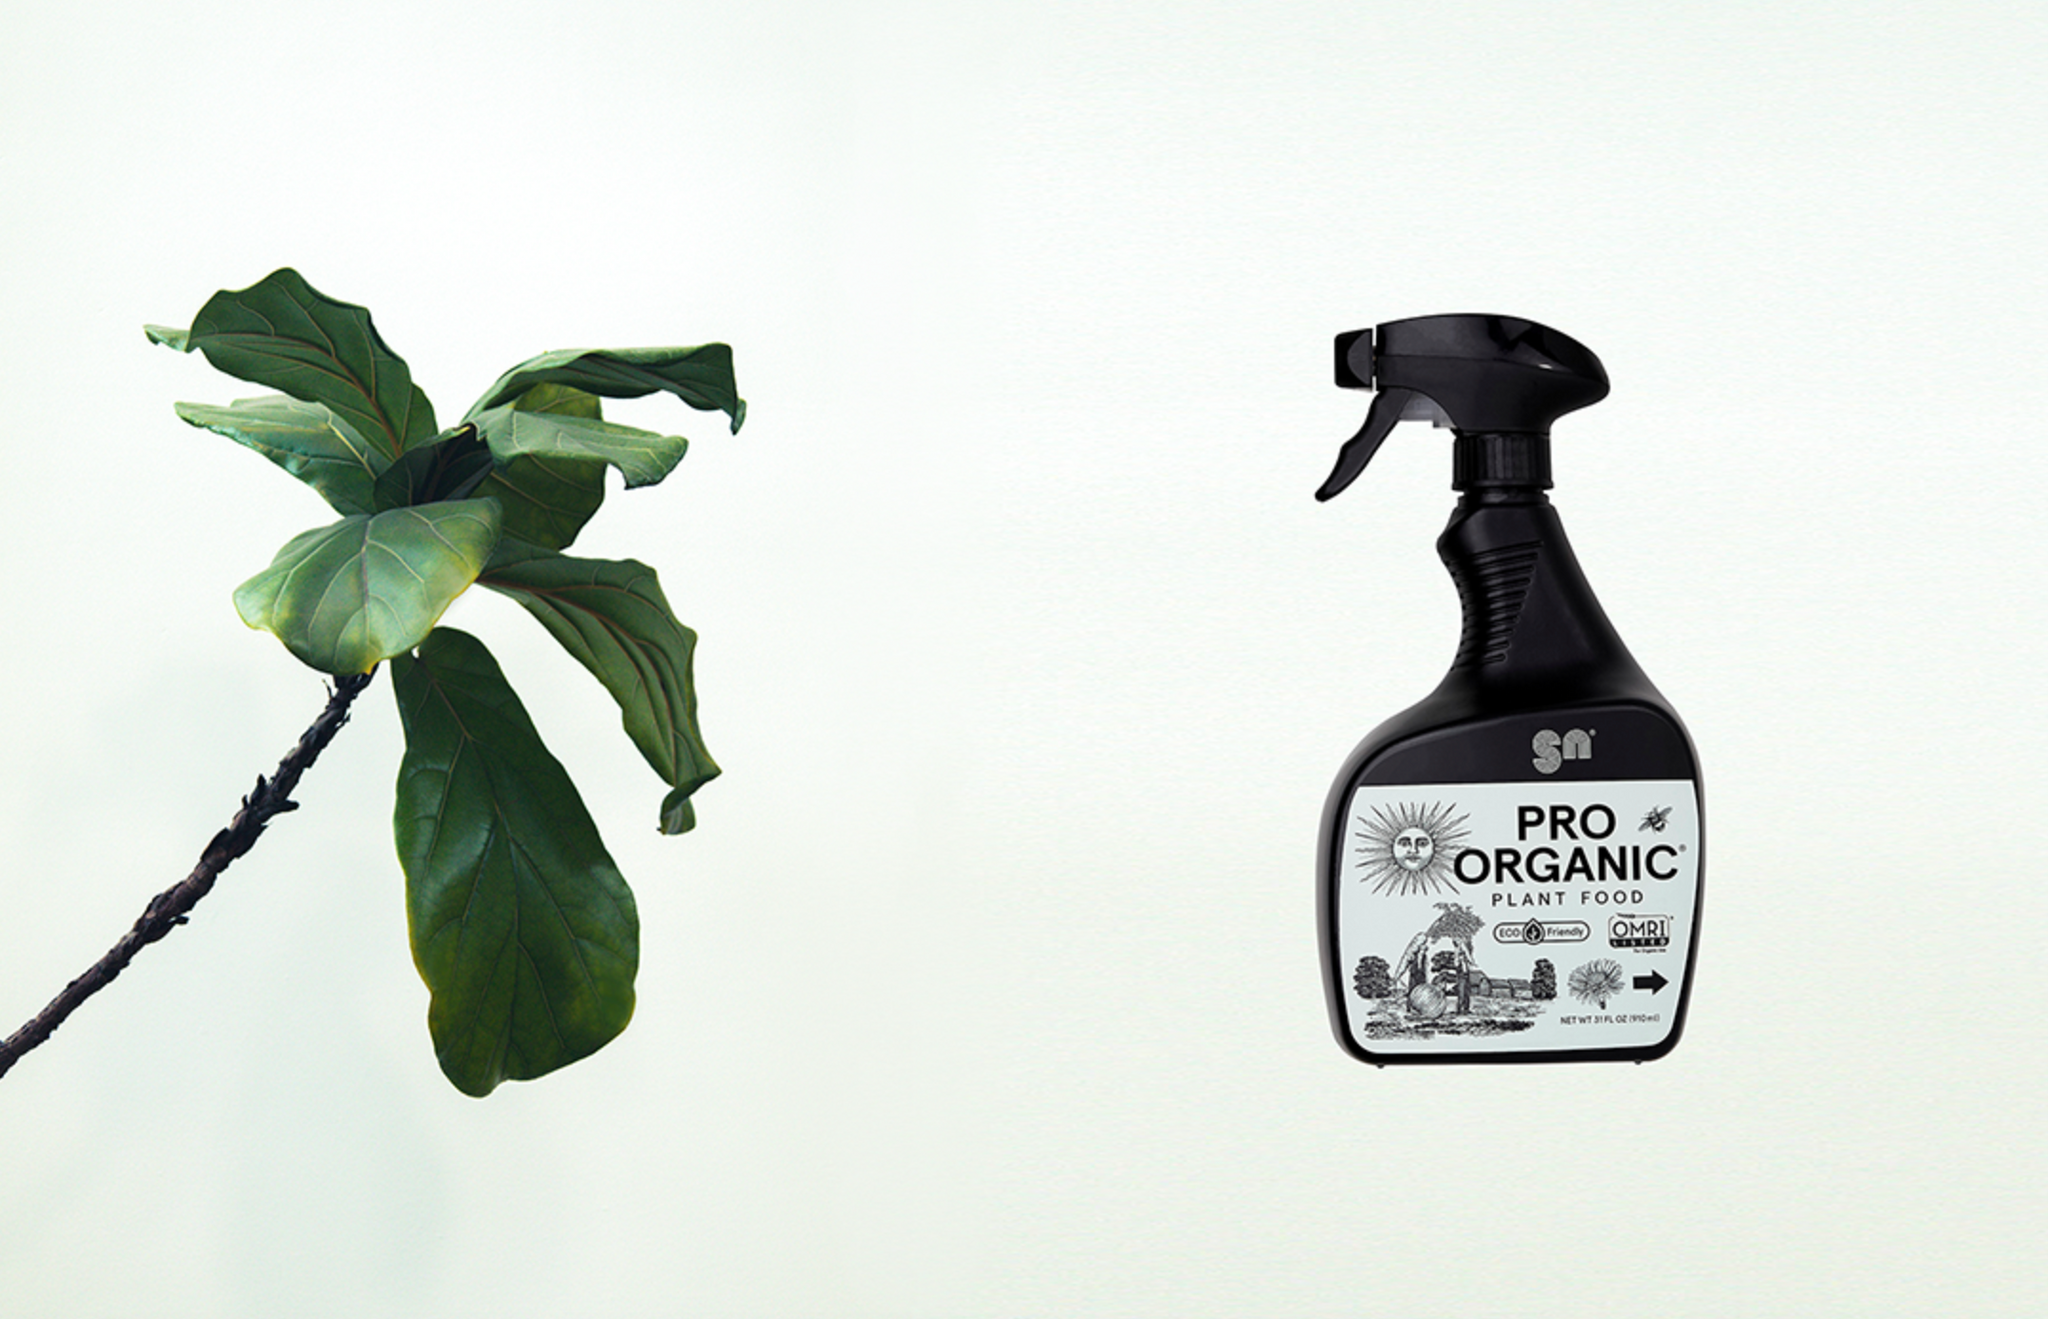 Image of PRO ORGANIC Foliar Feeding Spray with a healthy plant.